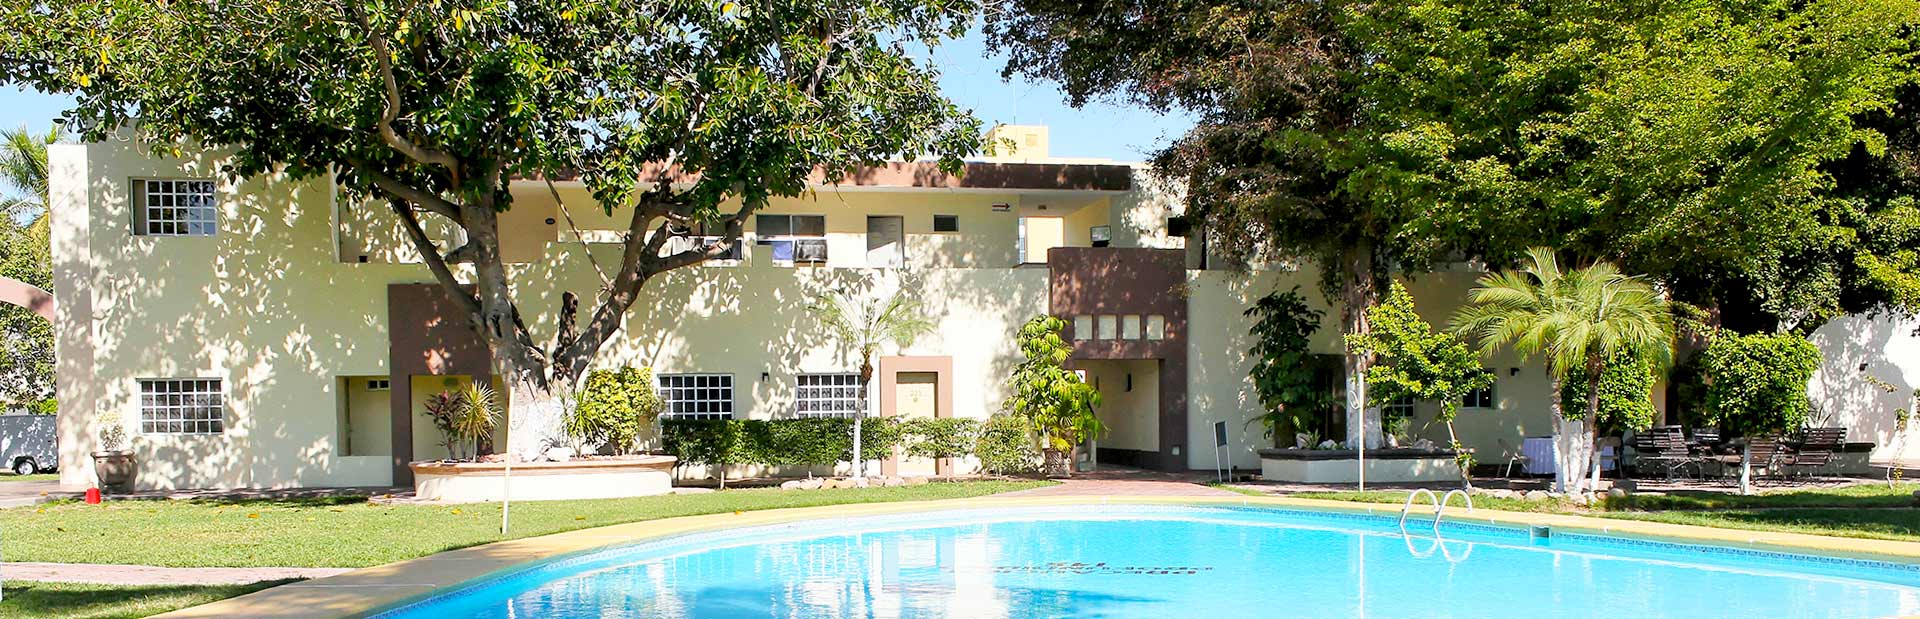 Best Western San Jorge – Hotel en Ciudad Obregón, Sonora